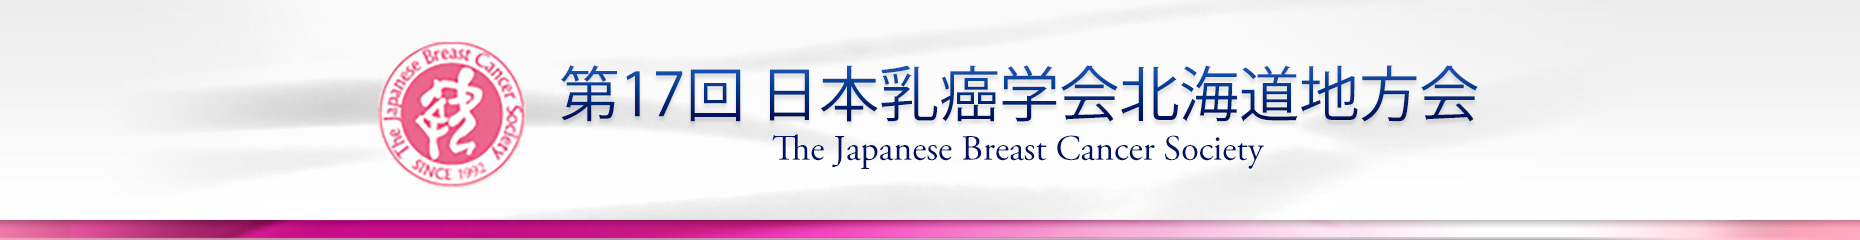 第17回日本乳癌学会北海道地方会